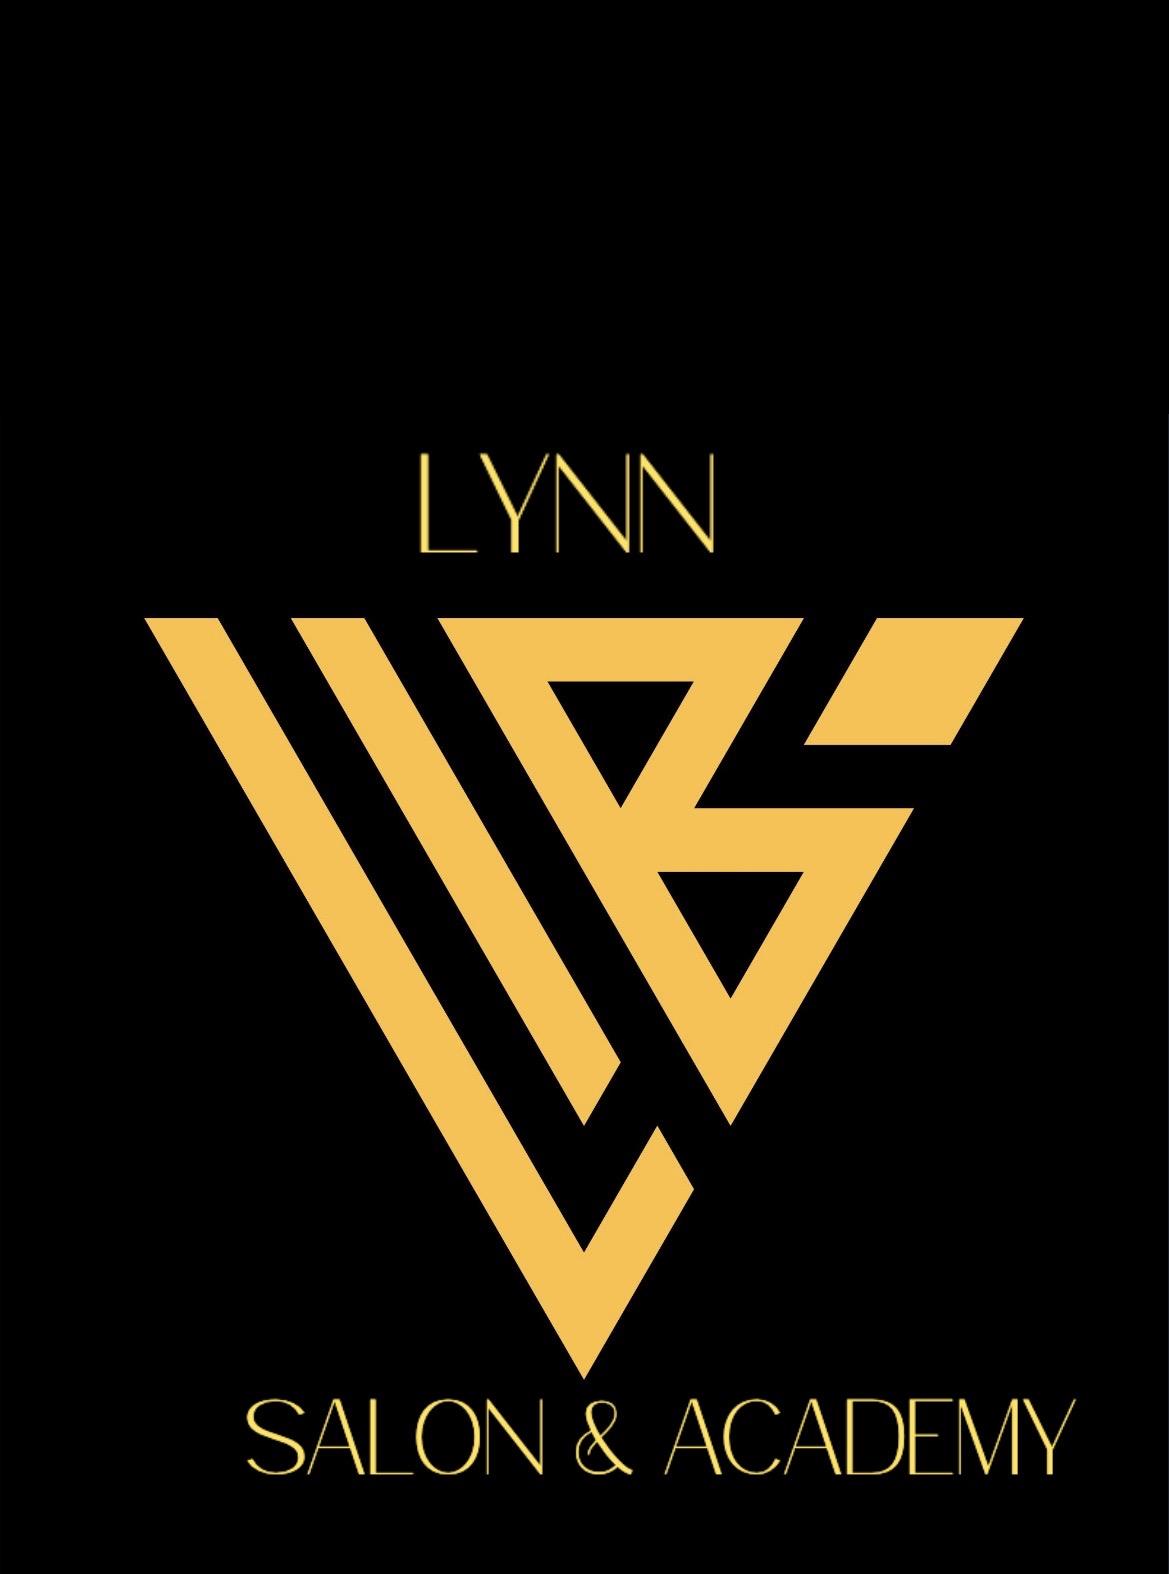 Lynn The Beauty & Academy